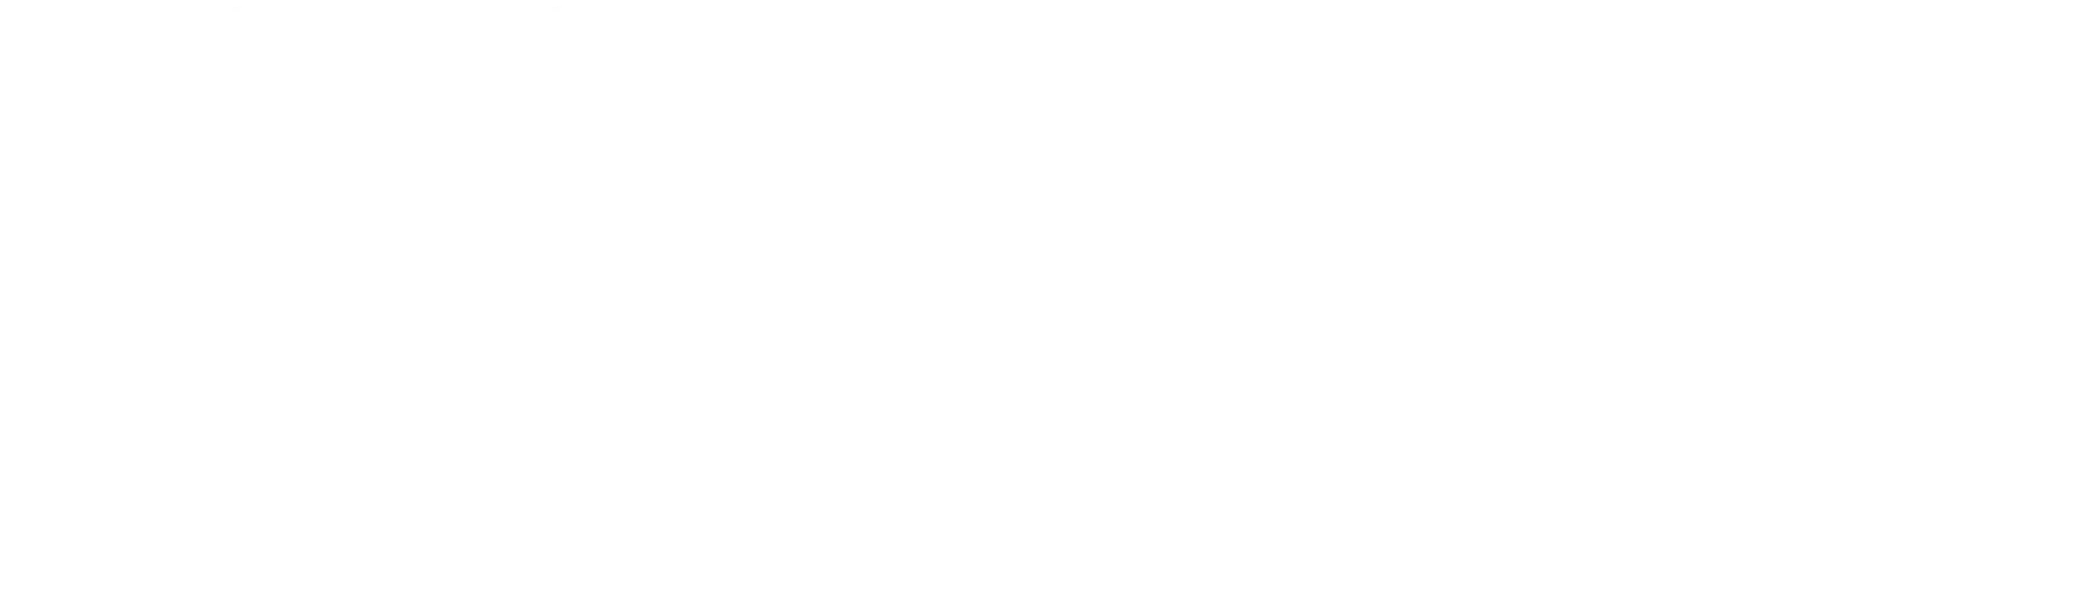 NCR_logo_pos